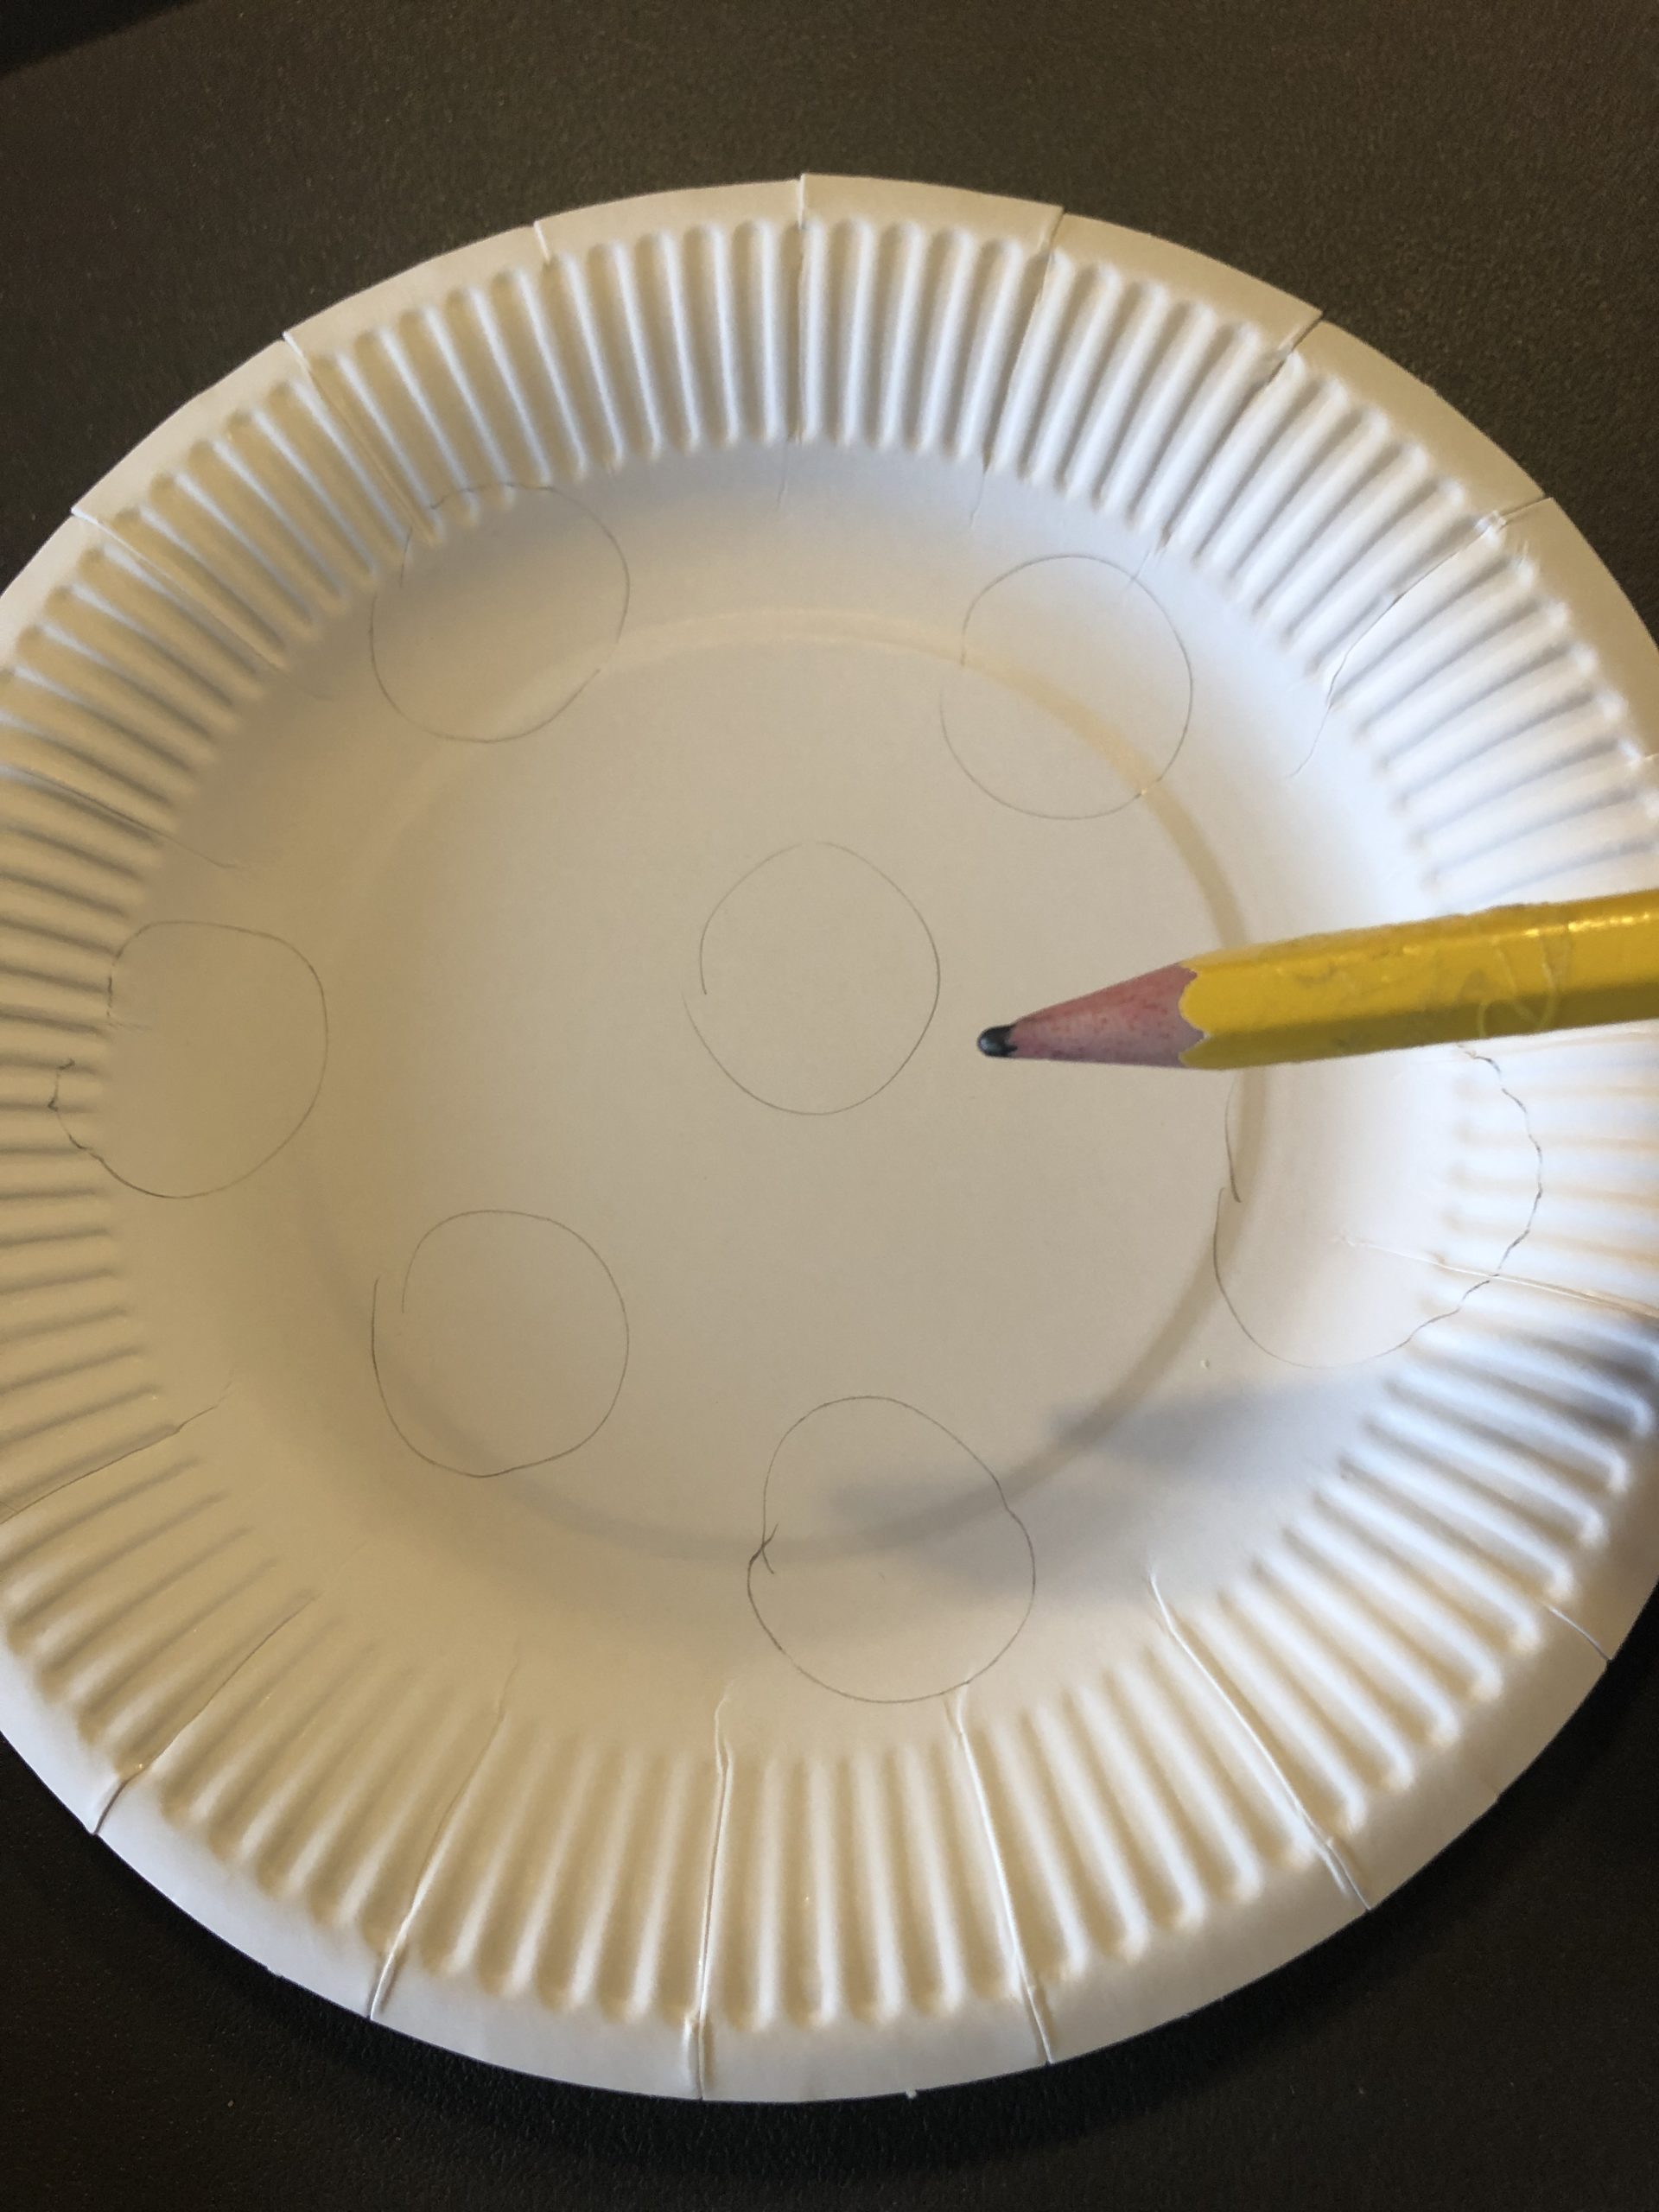 Bild zum Schritt 2 für das Bastel- und DIY-Abenteuer für Kinder: 'Jetzt zeichnet auf den Pappteller kleine Kreise auf.'